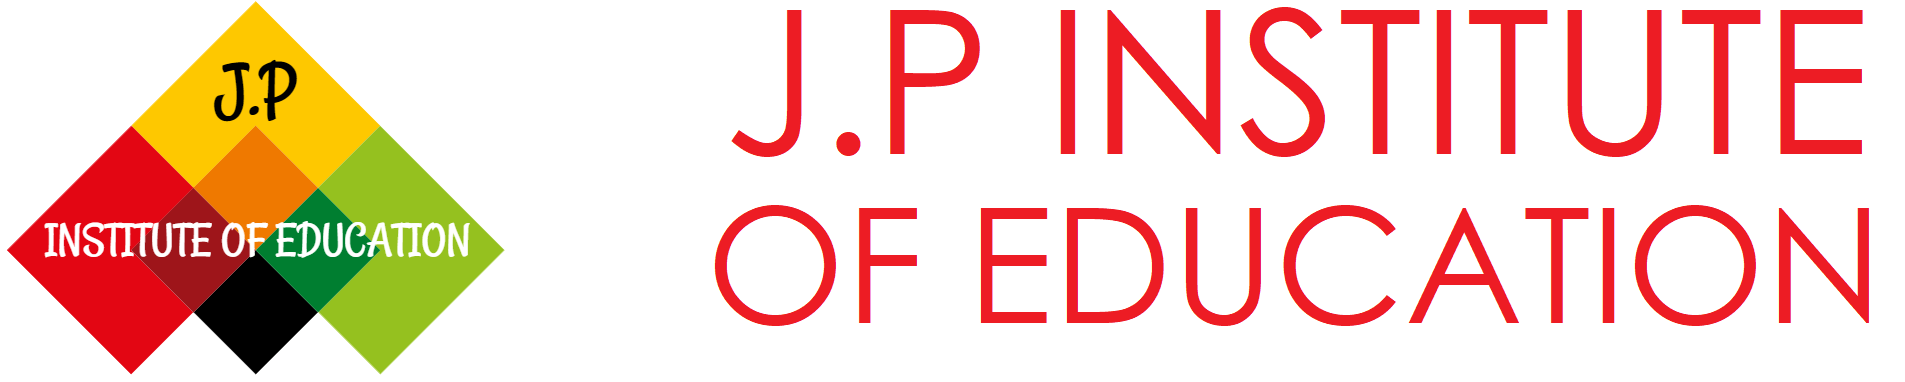 J.P INSTITUTE OF EDUCATION